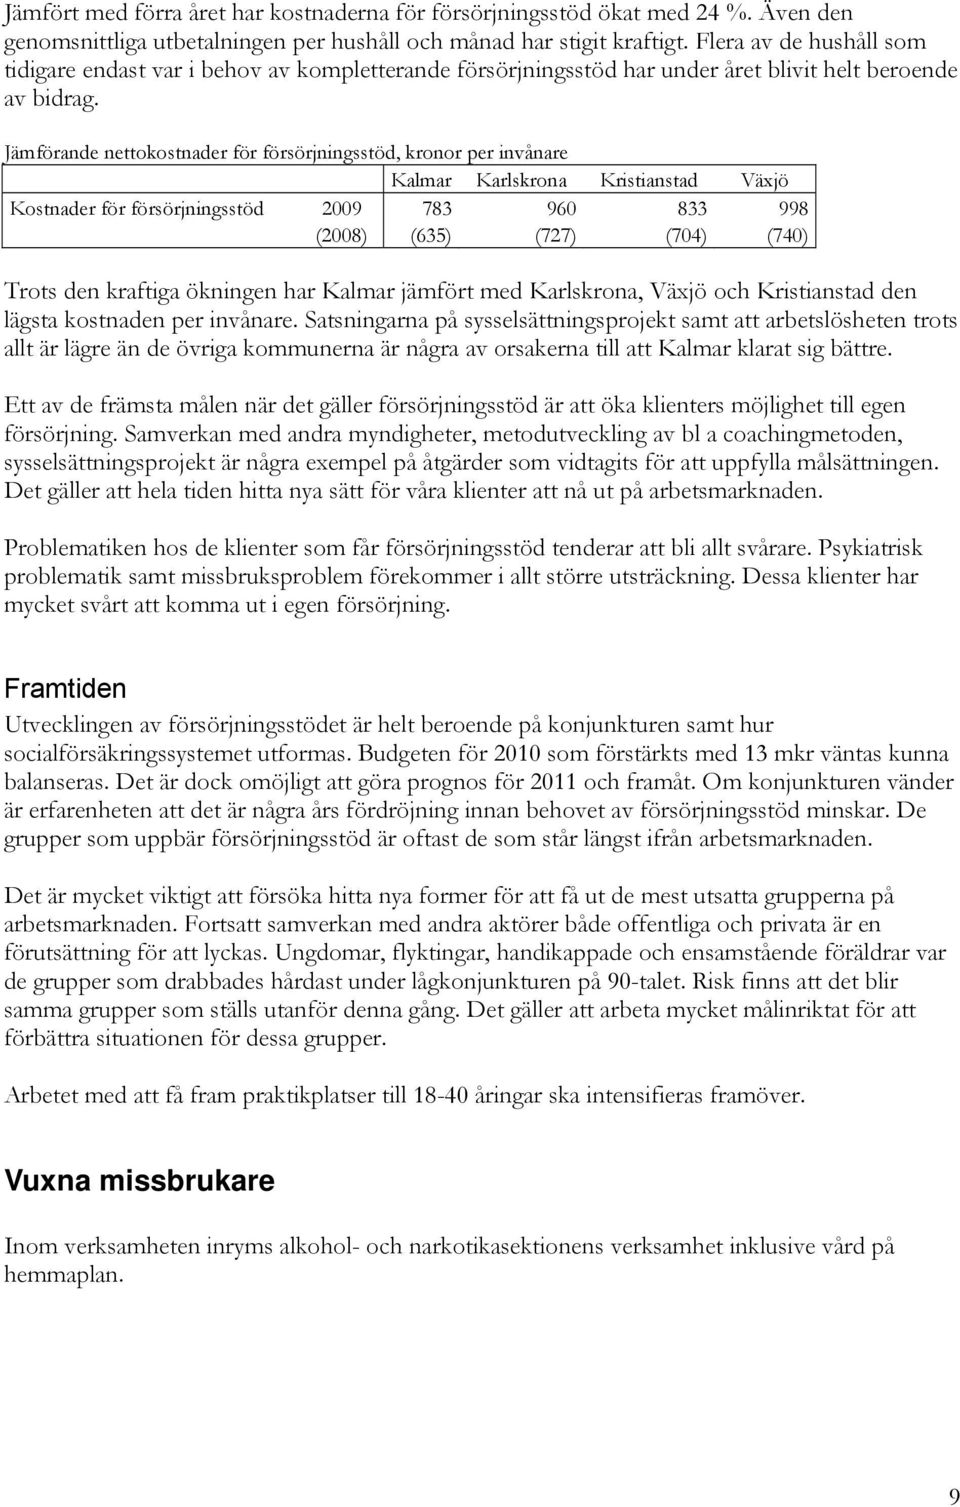 Jämförande nettokostnader för försörjningsstöd, kronor per invånare Kalmar Karlskrona Kristianstad Växjö Kostnader för försörjningsstöd 2009 783 960 833 998 (2008) (635) (727) (704) (740) Trots den